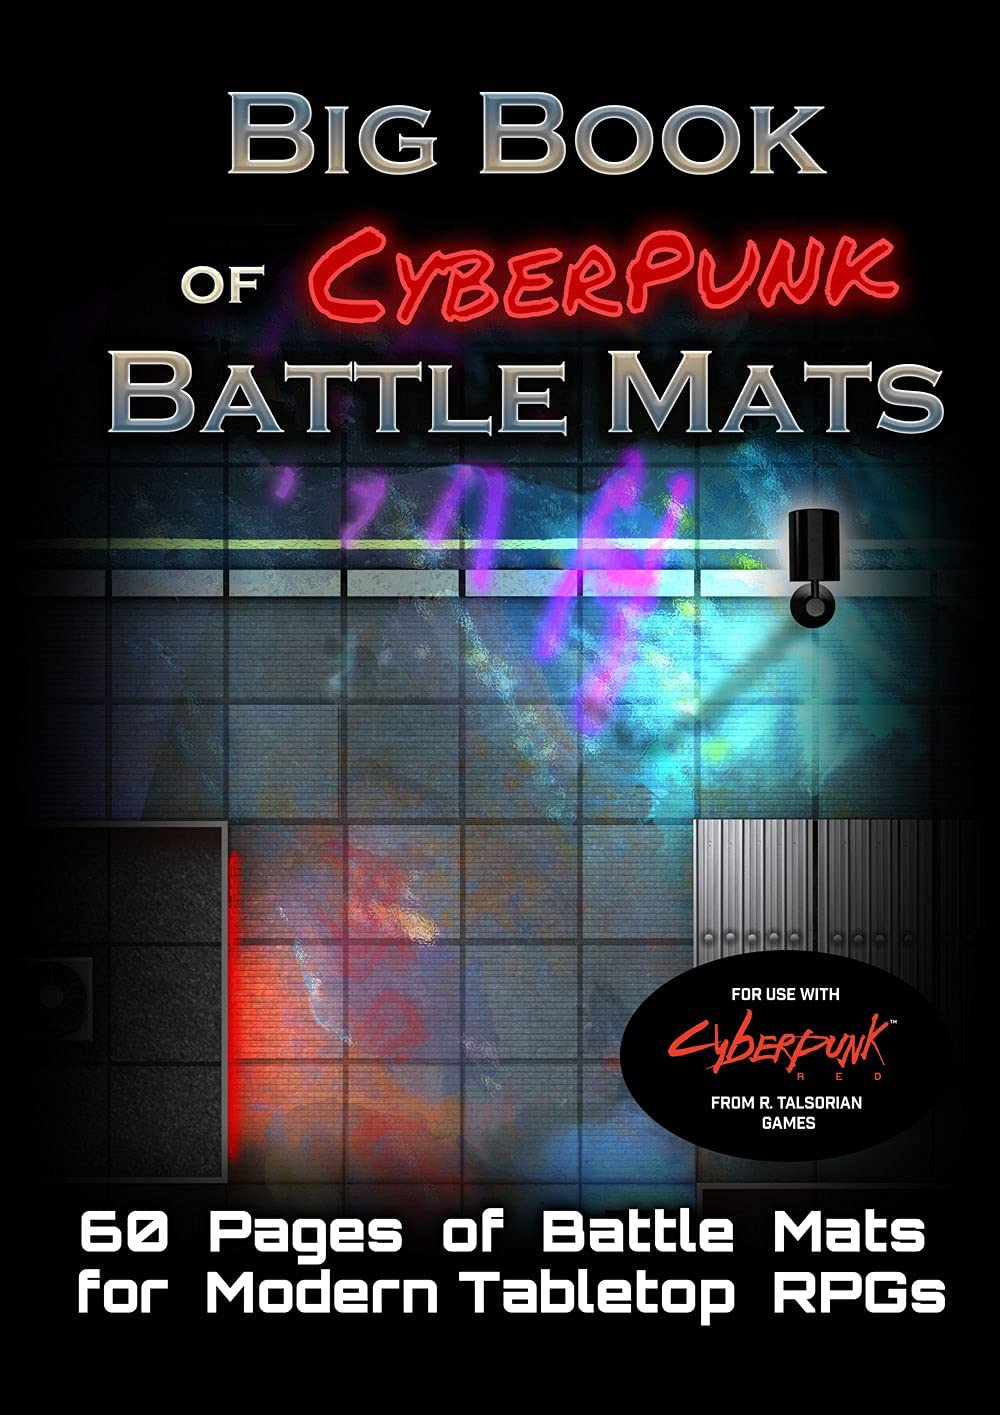 Loke: Big Book of Battle Mats - Cyberpunk - Third Eye